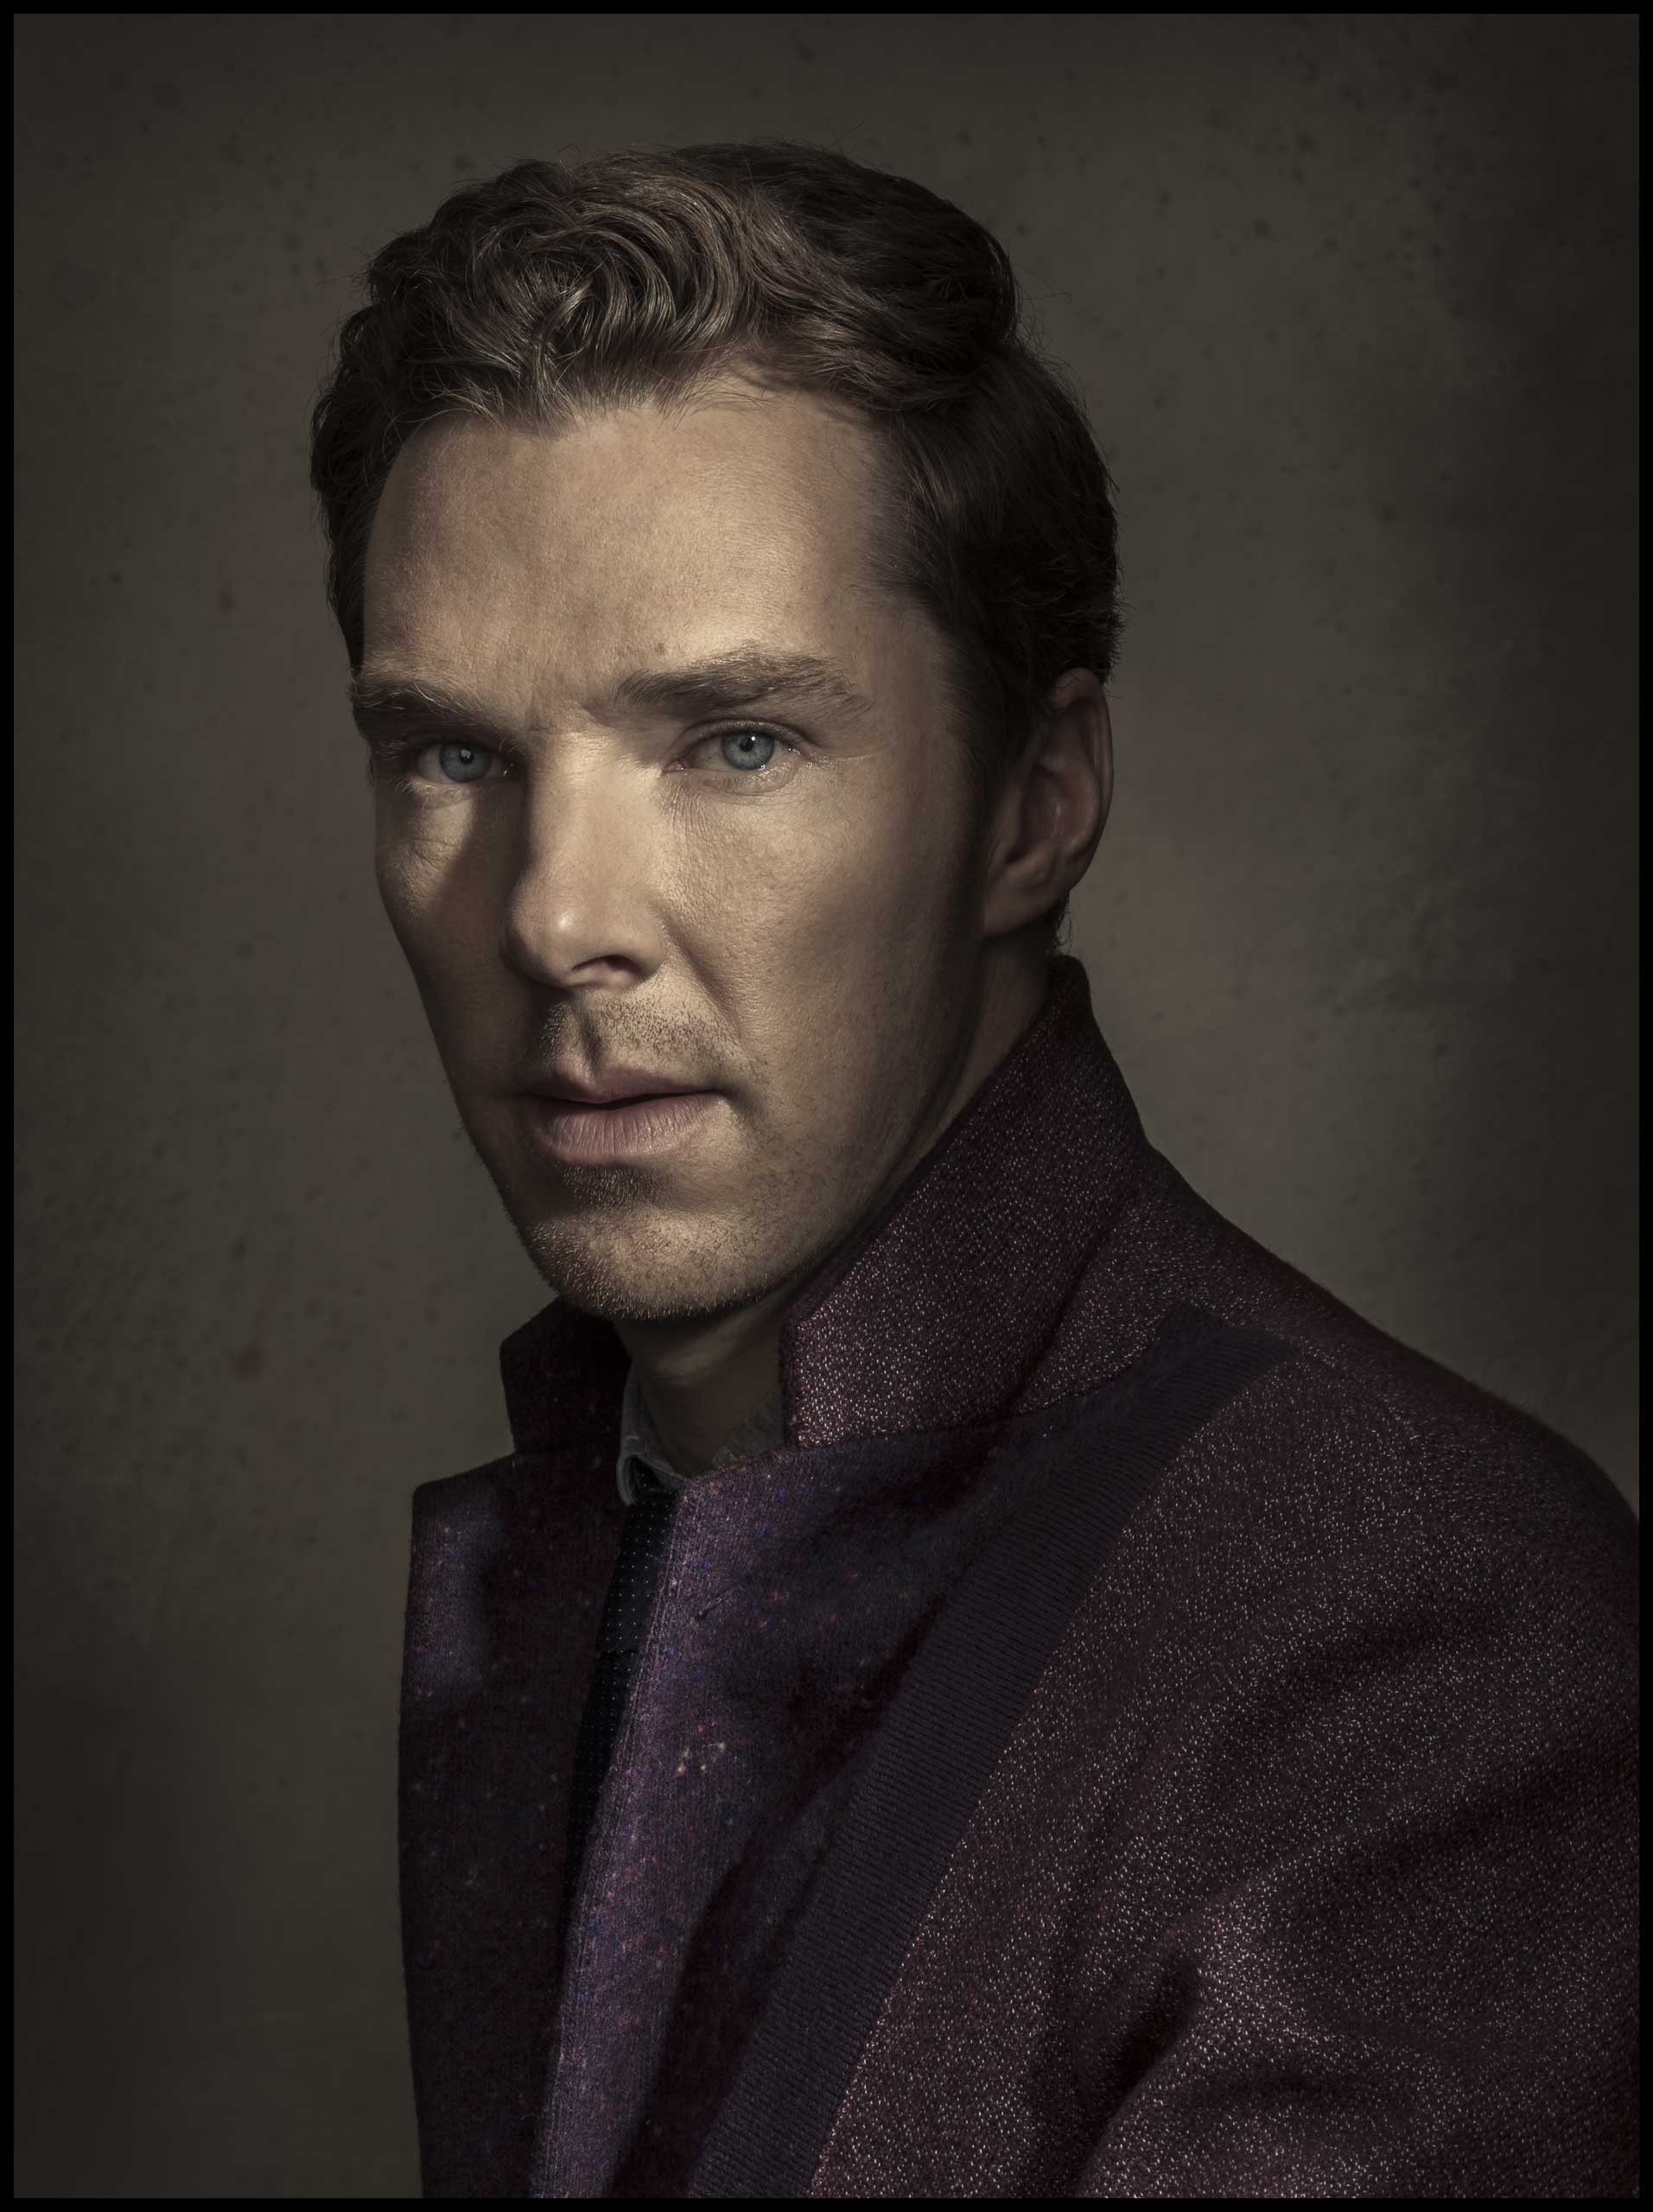 Benedict Cumberbatch. From  The Price of Genius.  Dec. 1 / Dec. 8, 2014 issue.